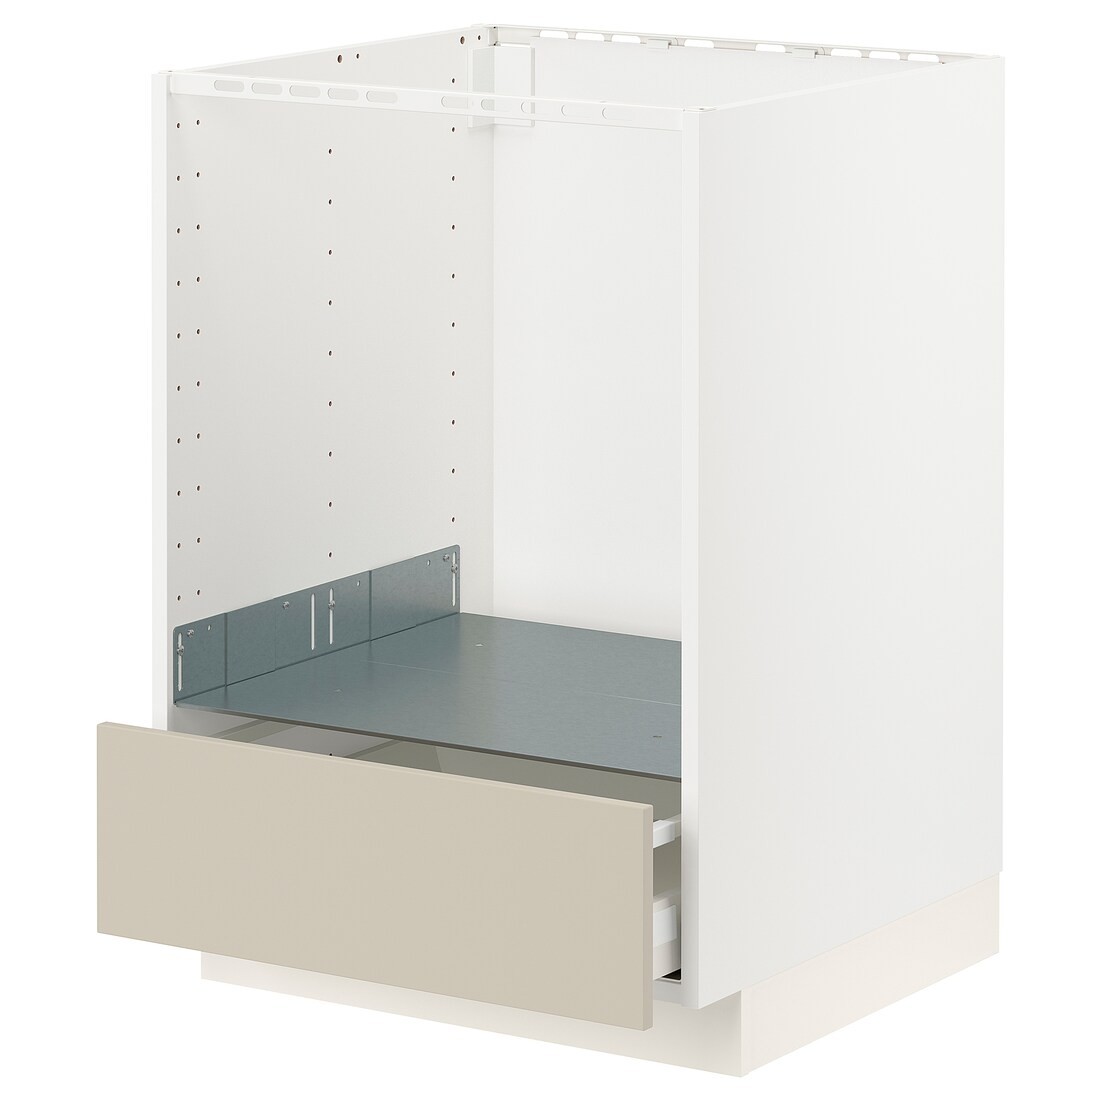 IKEA METOD МЕТОД / MAXIMERA МАКСИМЕРА Шкаф под духовку с ящиком, белый / Havstorp бежевый, 60x60 см 29426663 | 294.266.63